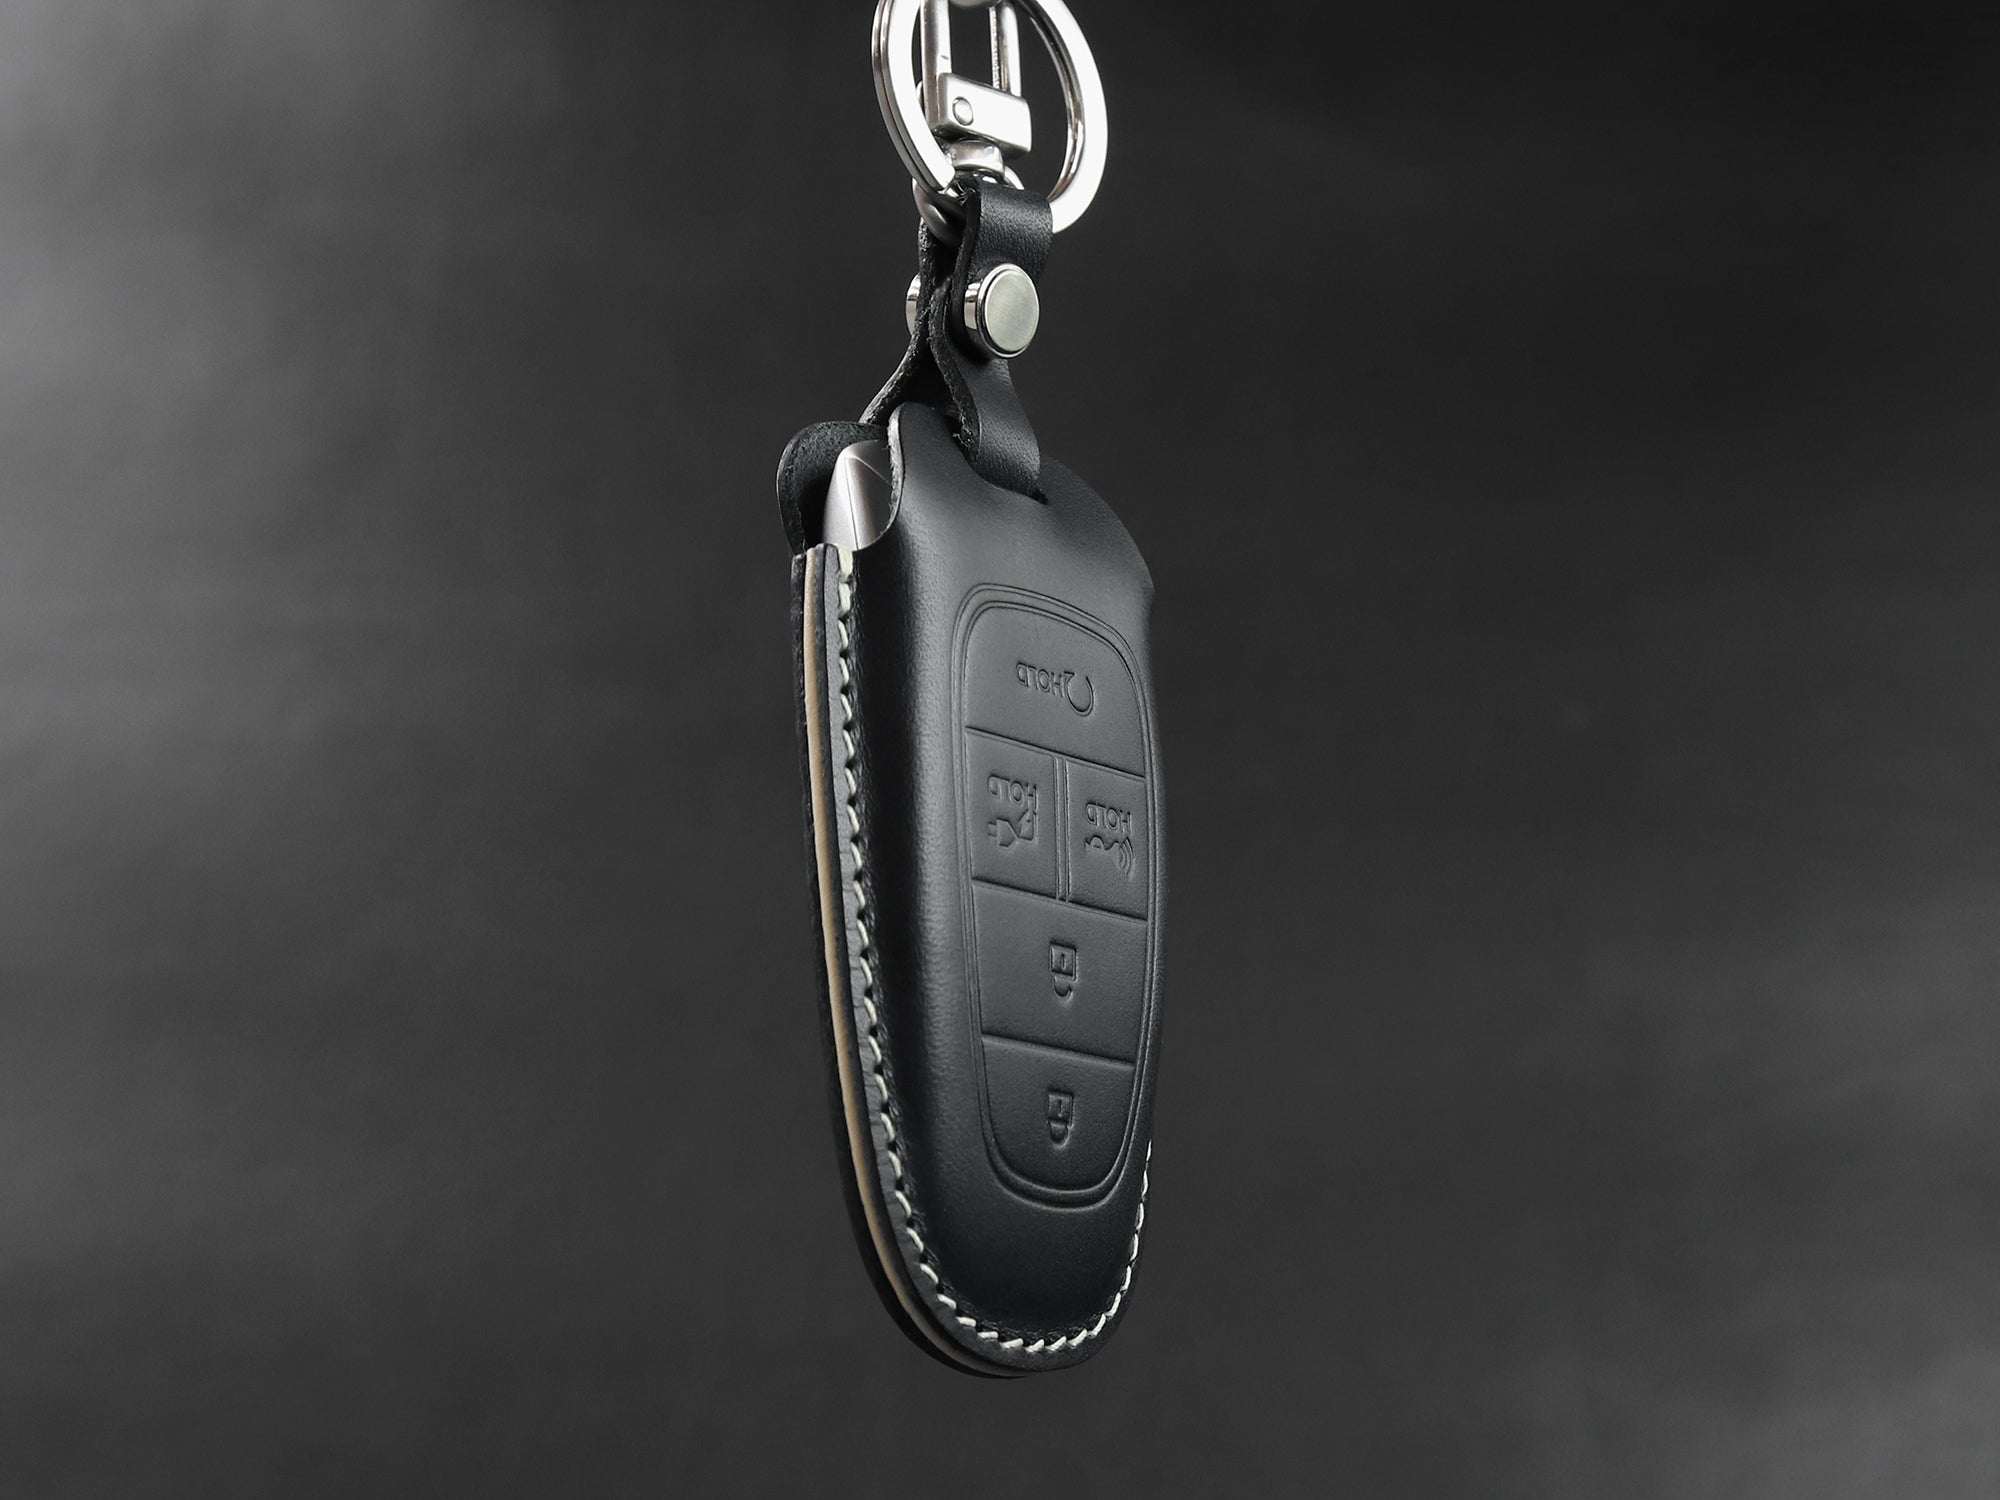 Car Keychain